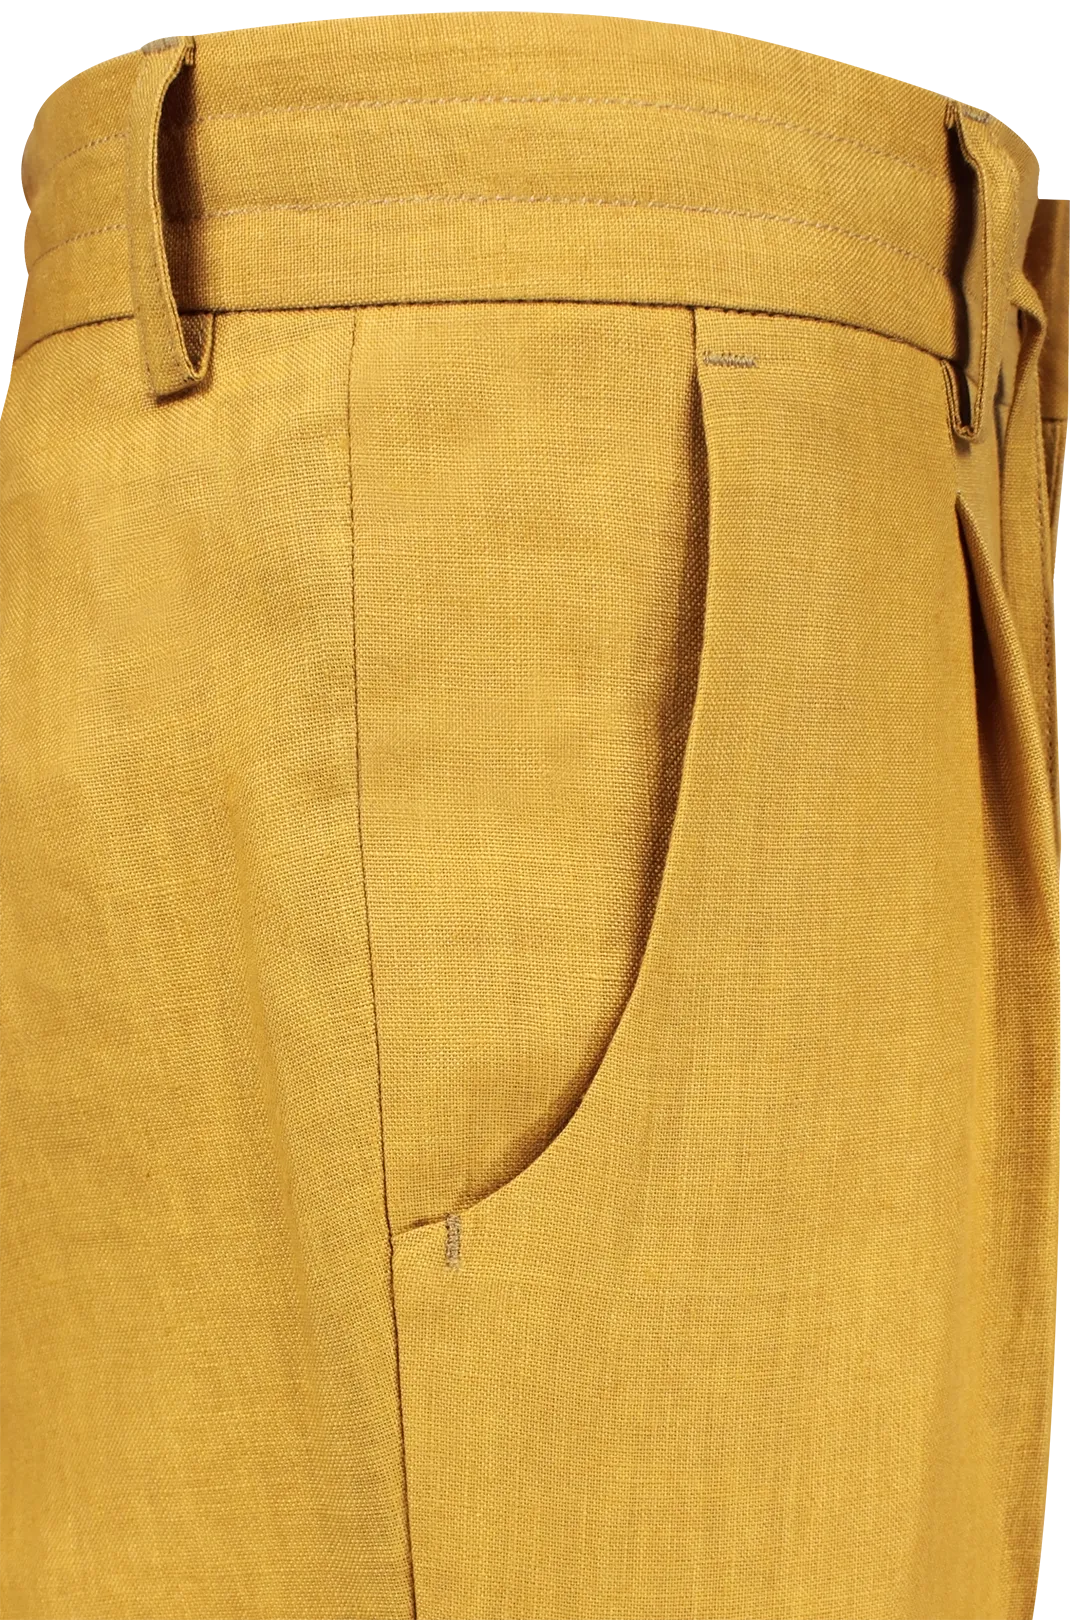 Pantalone con due pince e coulisse in lino senape lato